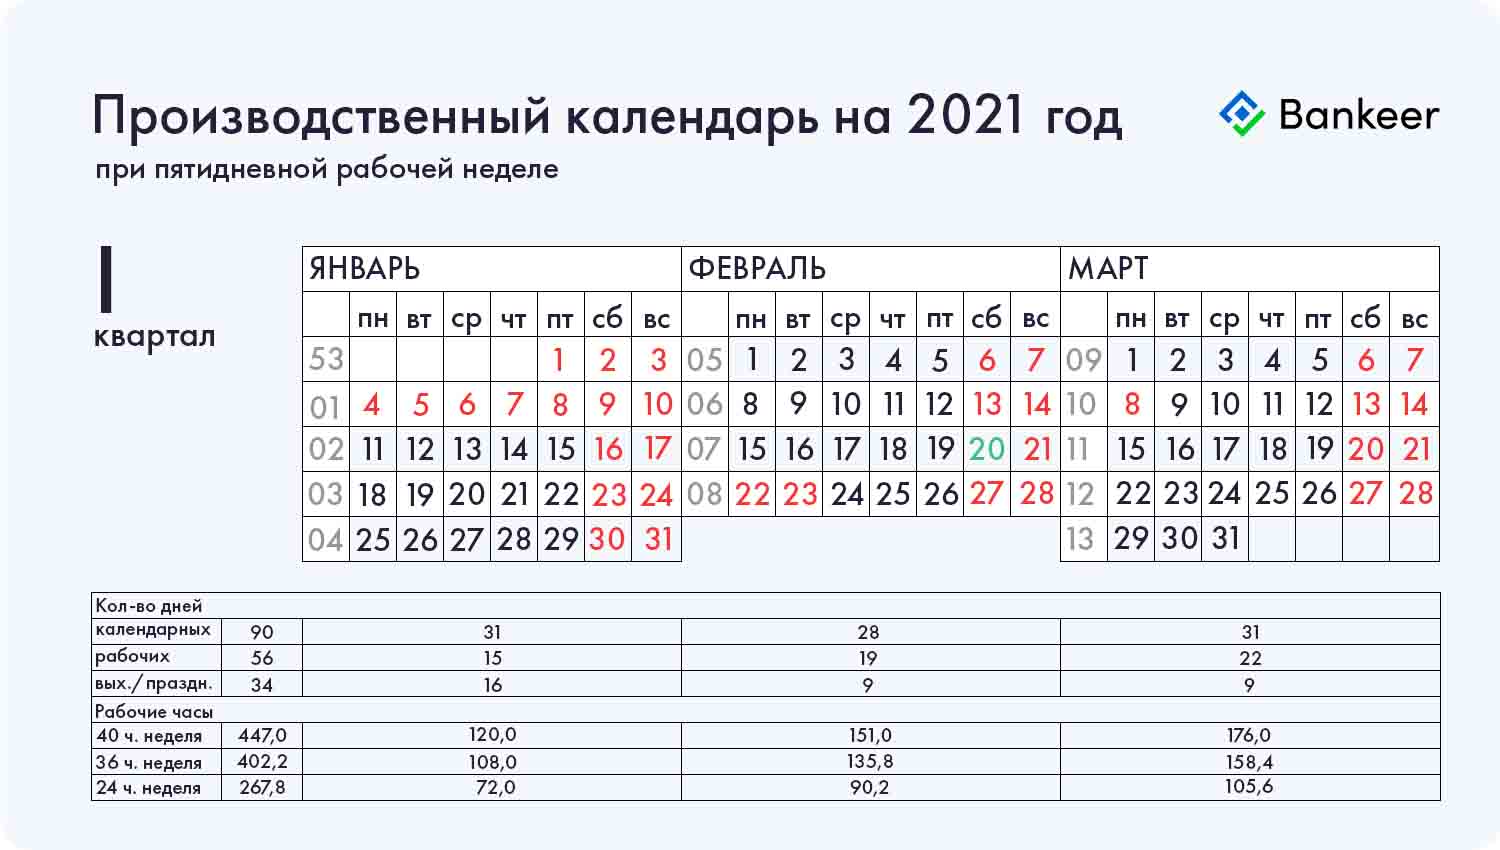 Производственный календарь на 2021 год 1 (I) квартал